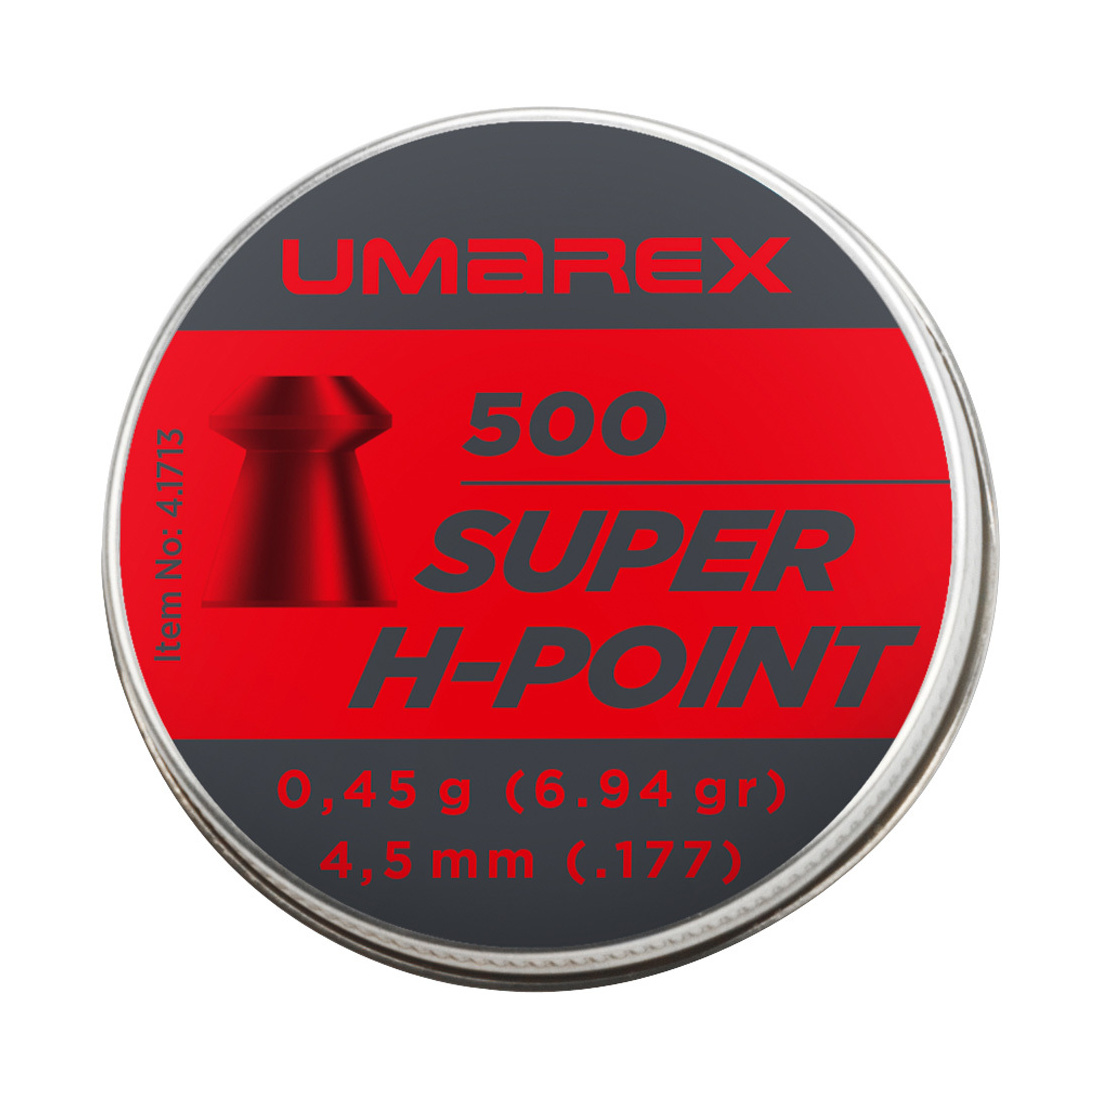 Umarex Super H-Point 0,45g - 500 Stk. 4,5 mm (.177)